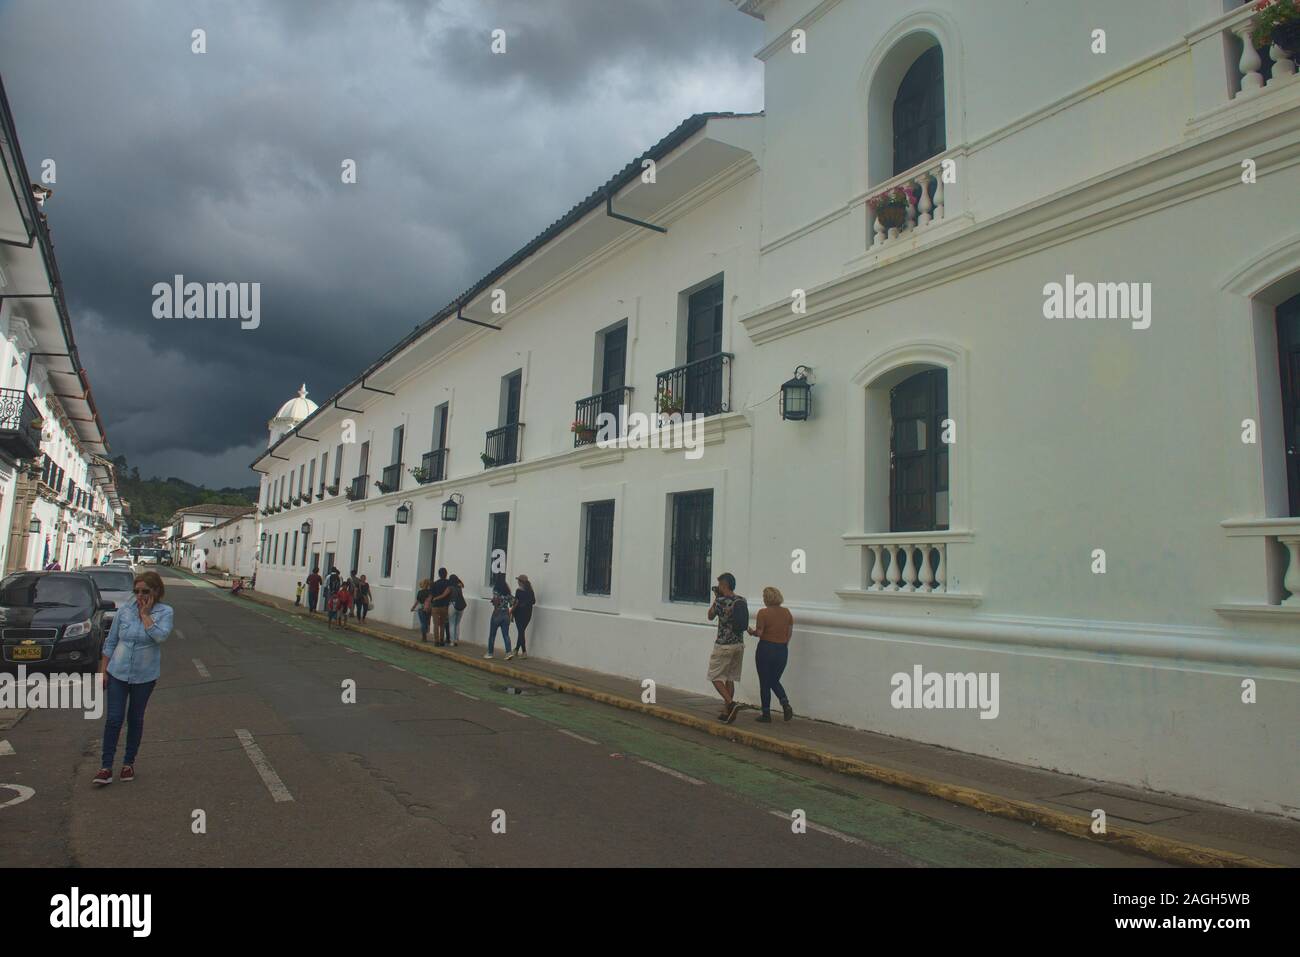 L'architecture coloniale dans la Ciudad Blanca (La ville blanche), Popayan, Colombie Banque D'Images